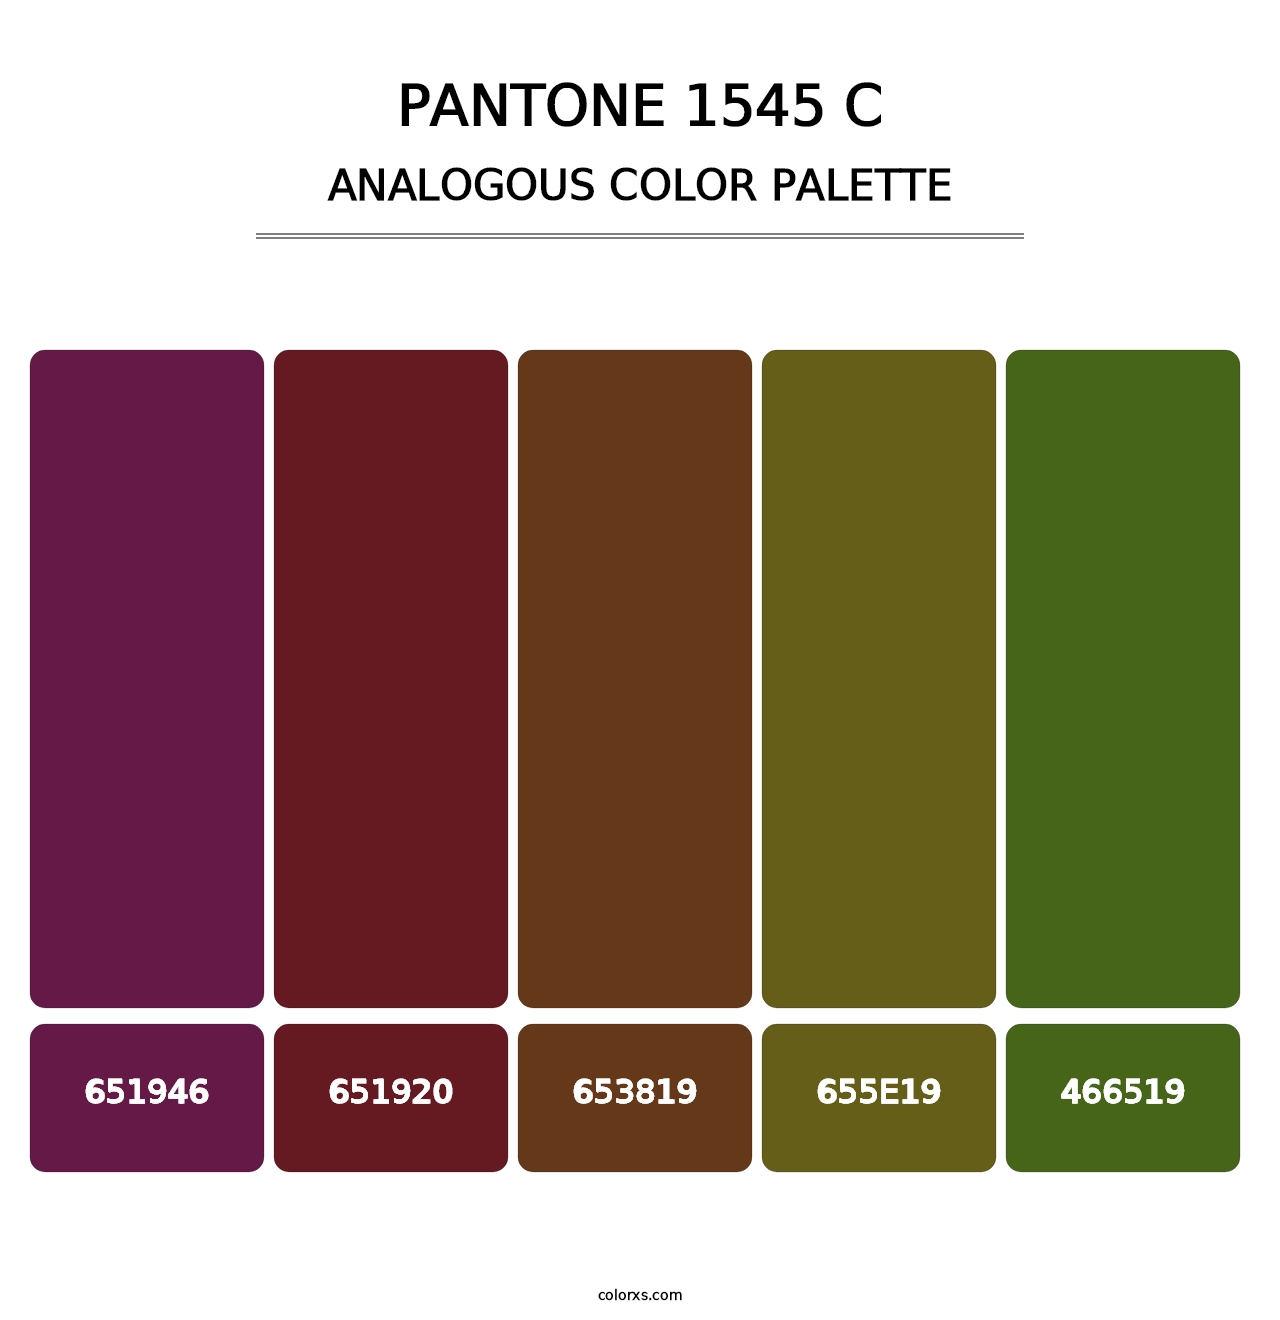 PANTONE 1545 C - Analogous Color Palette